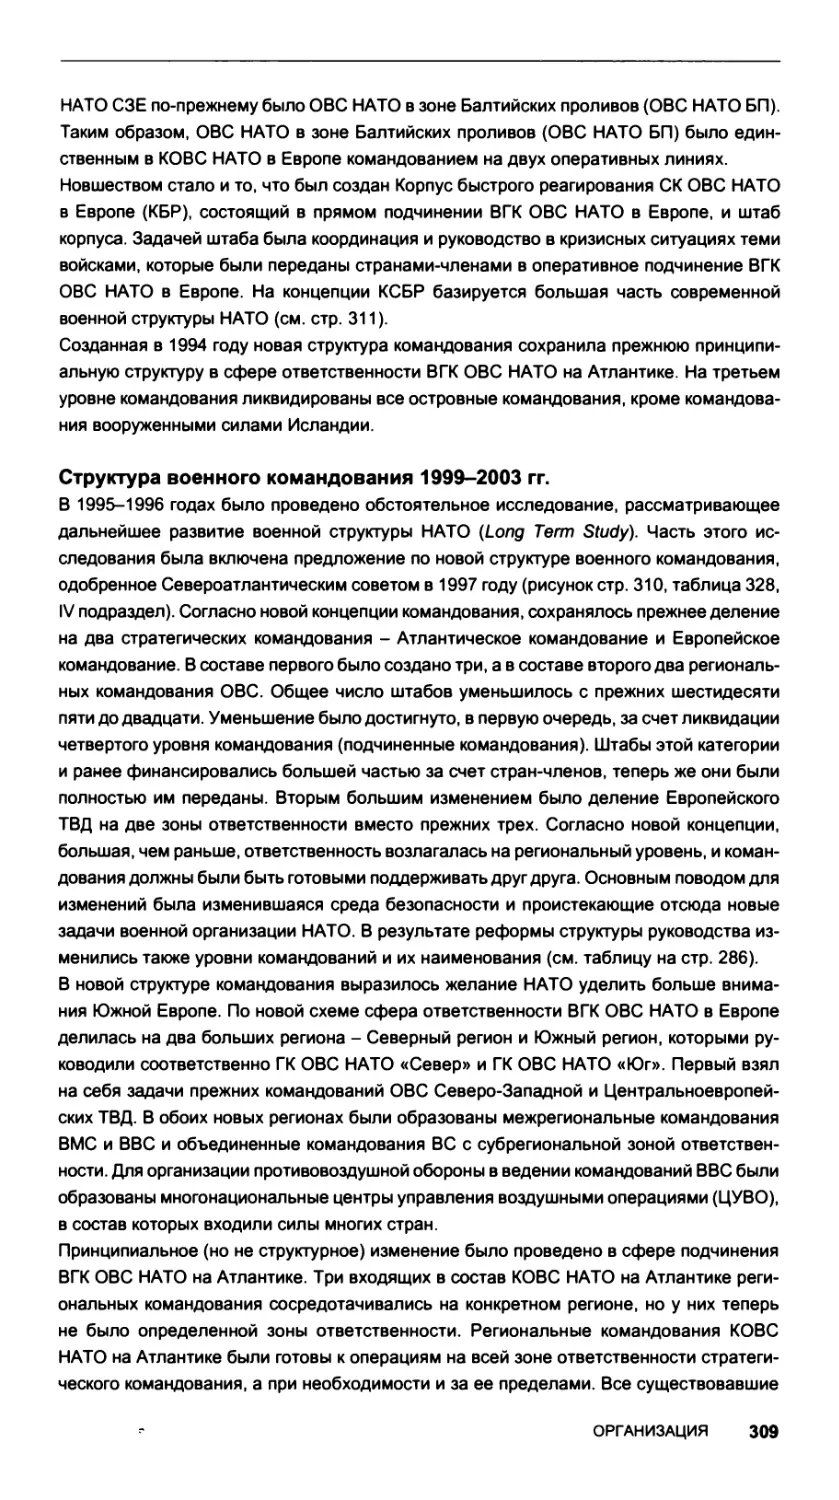 Структура военного командования 1999-2003 гг.